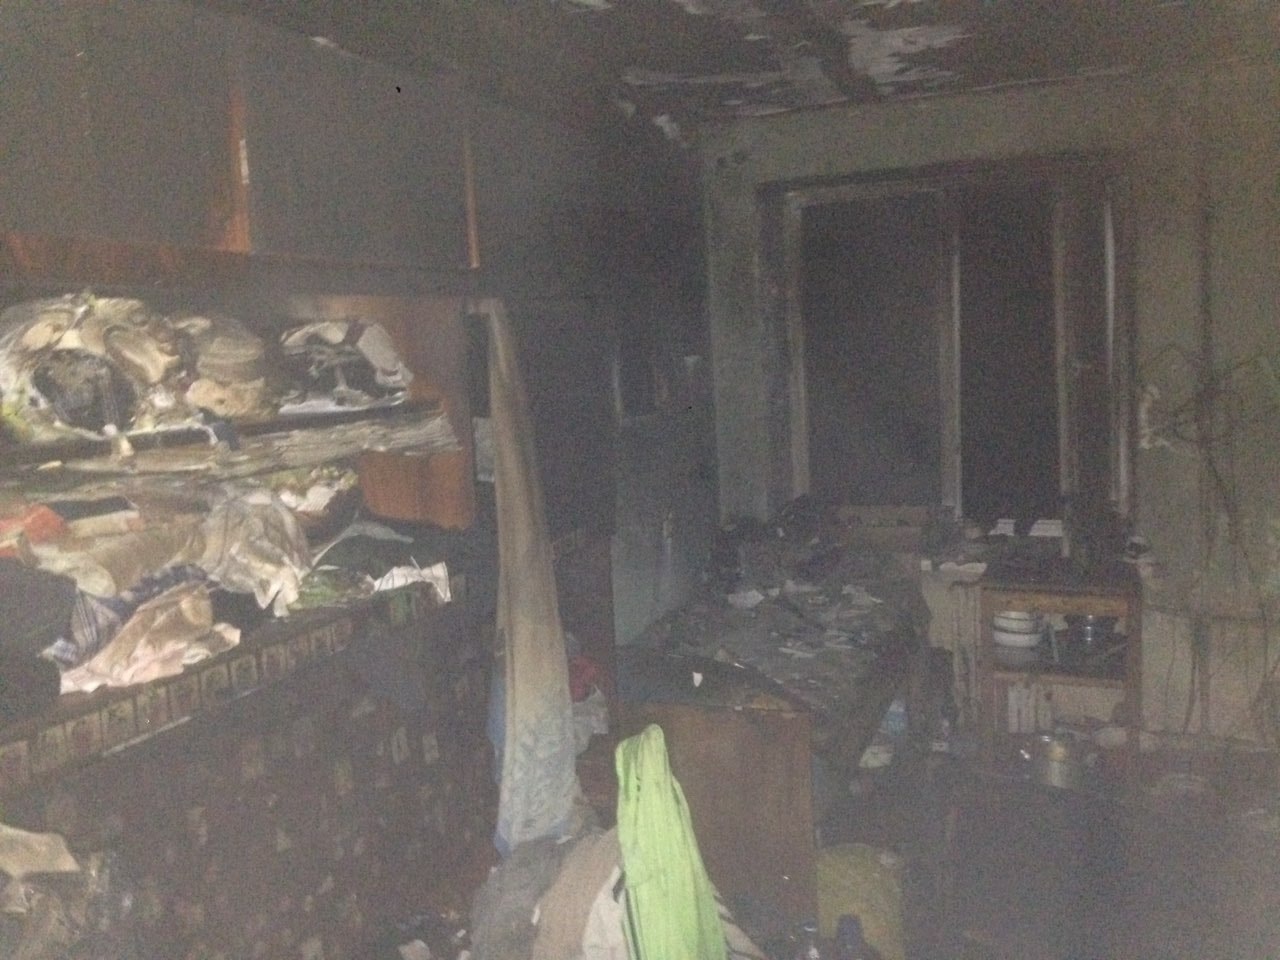 Під час пожежі в гуртожитку в Мукачеві евакуйовано 30 людей, один чоловік отруївся чадним газом і отримав опіки (ФОТО)